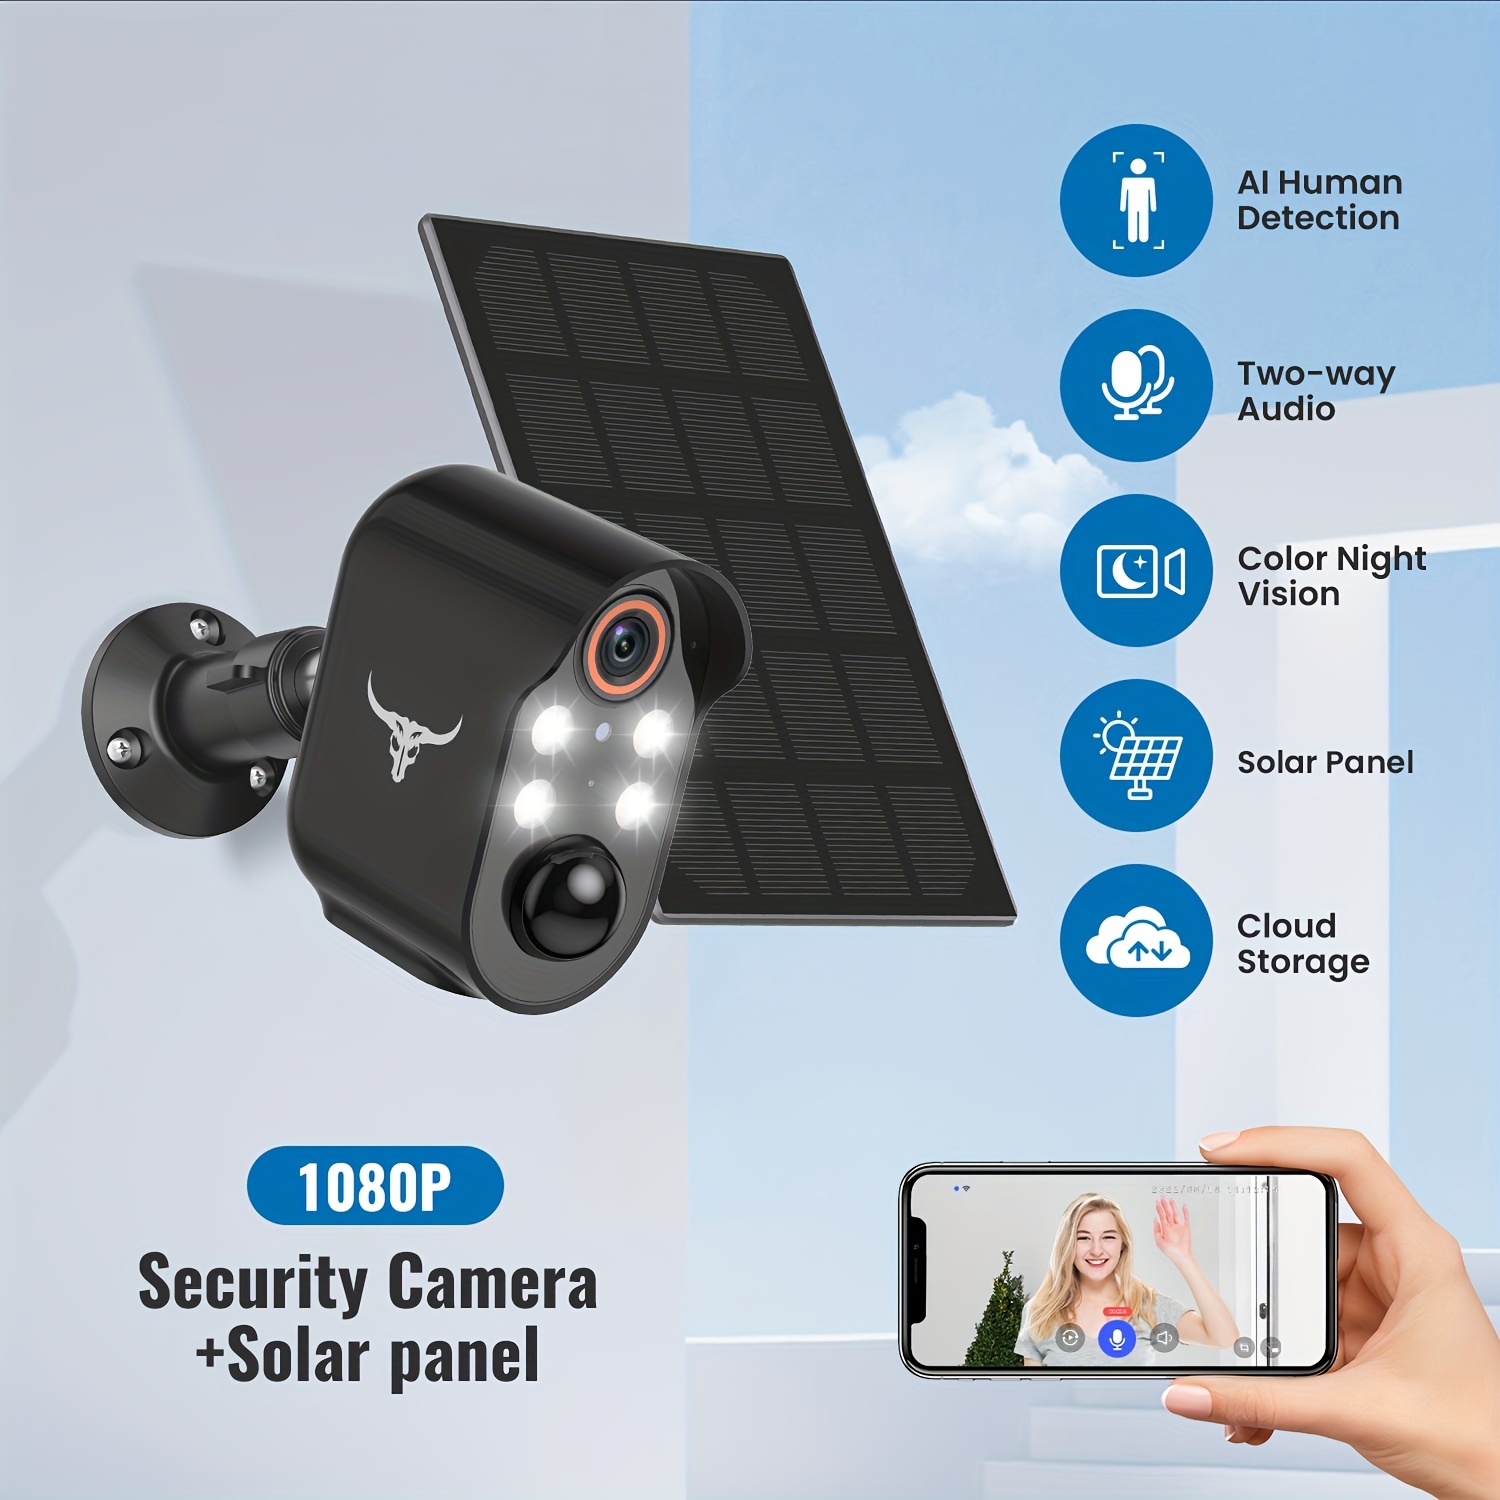 Camera de Surveillance Solaire sans fil WiFi Tuya Intelligente 5MP avec  Batterie Rechargeable 5200mAh Protection CCTV